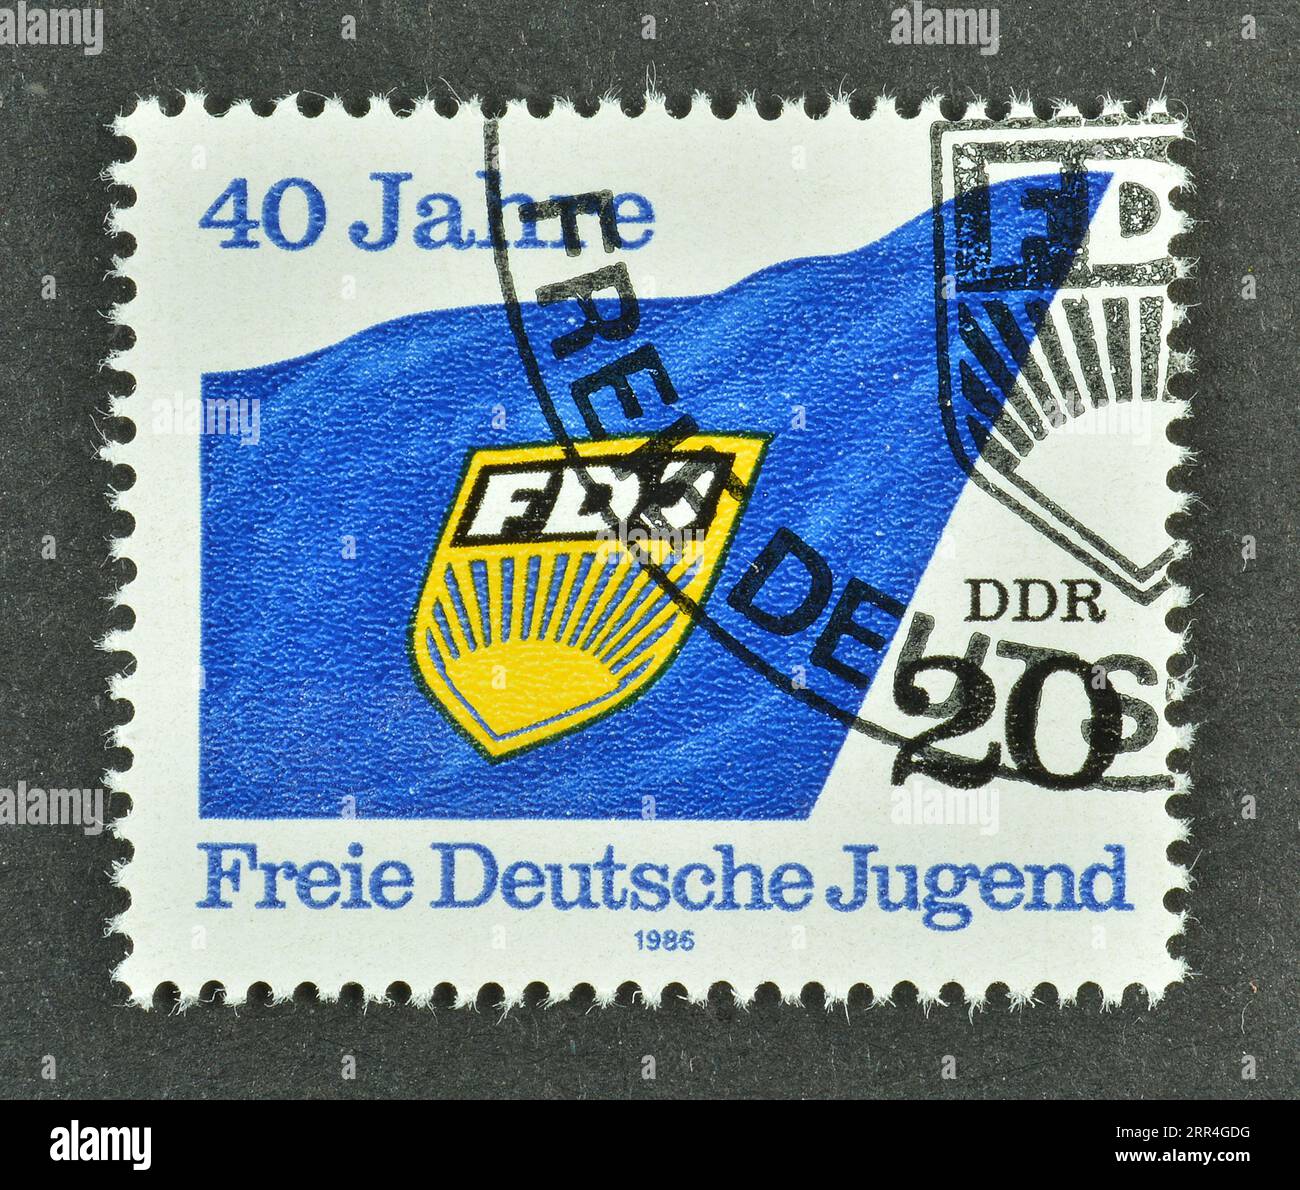 Gestempelte Briefmarke, gedruckt von der DDR, die FDJ-Flagge zeigt, 40 Jahre Freie Deutsche Jugend, um 1986. Stockfoto